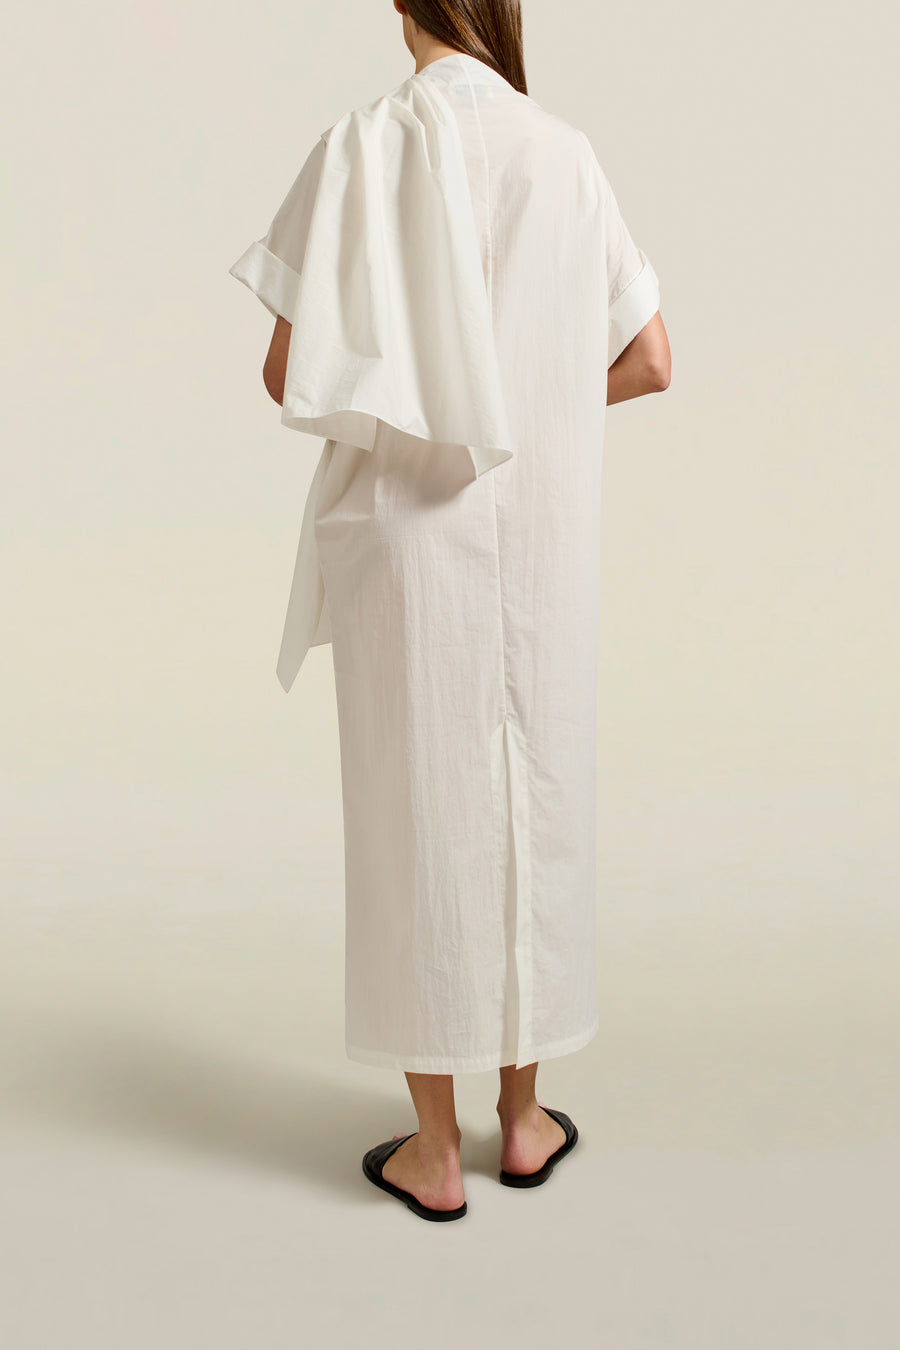 Myra Long Dress in White Techy Cotton Nylon